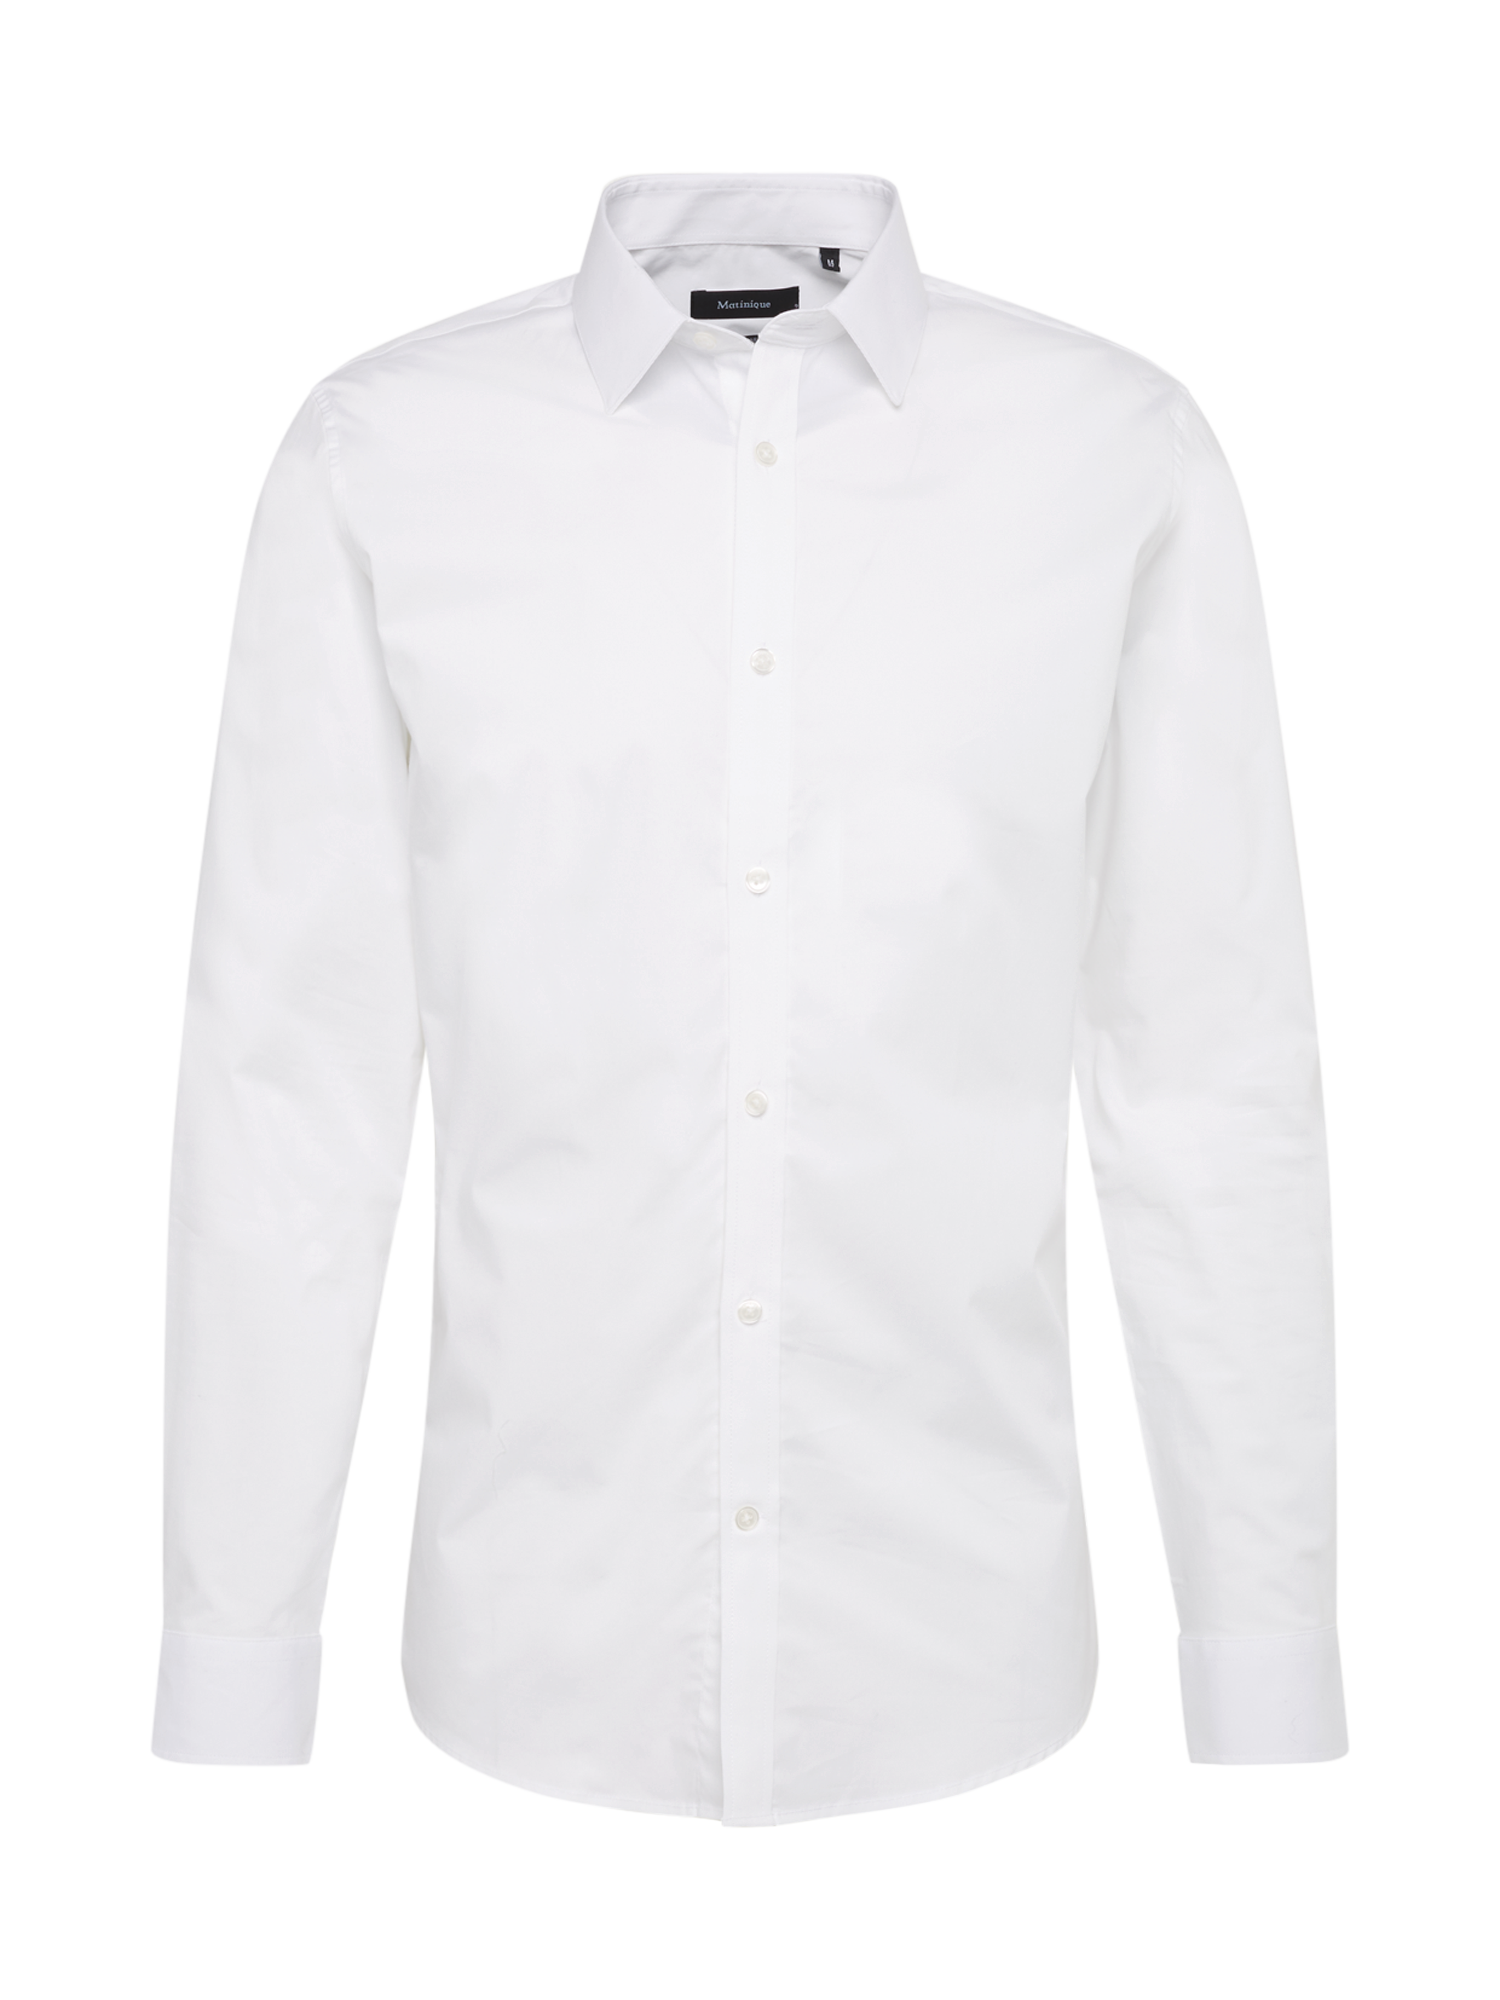 Abbigliamento Uomo Matinique Camicia in Bianco 